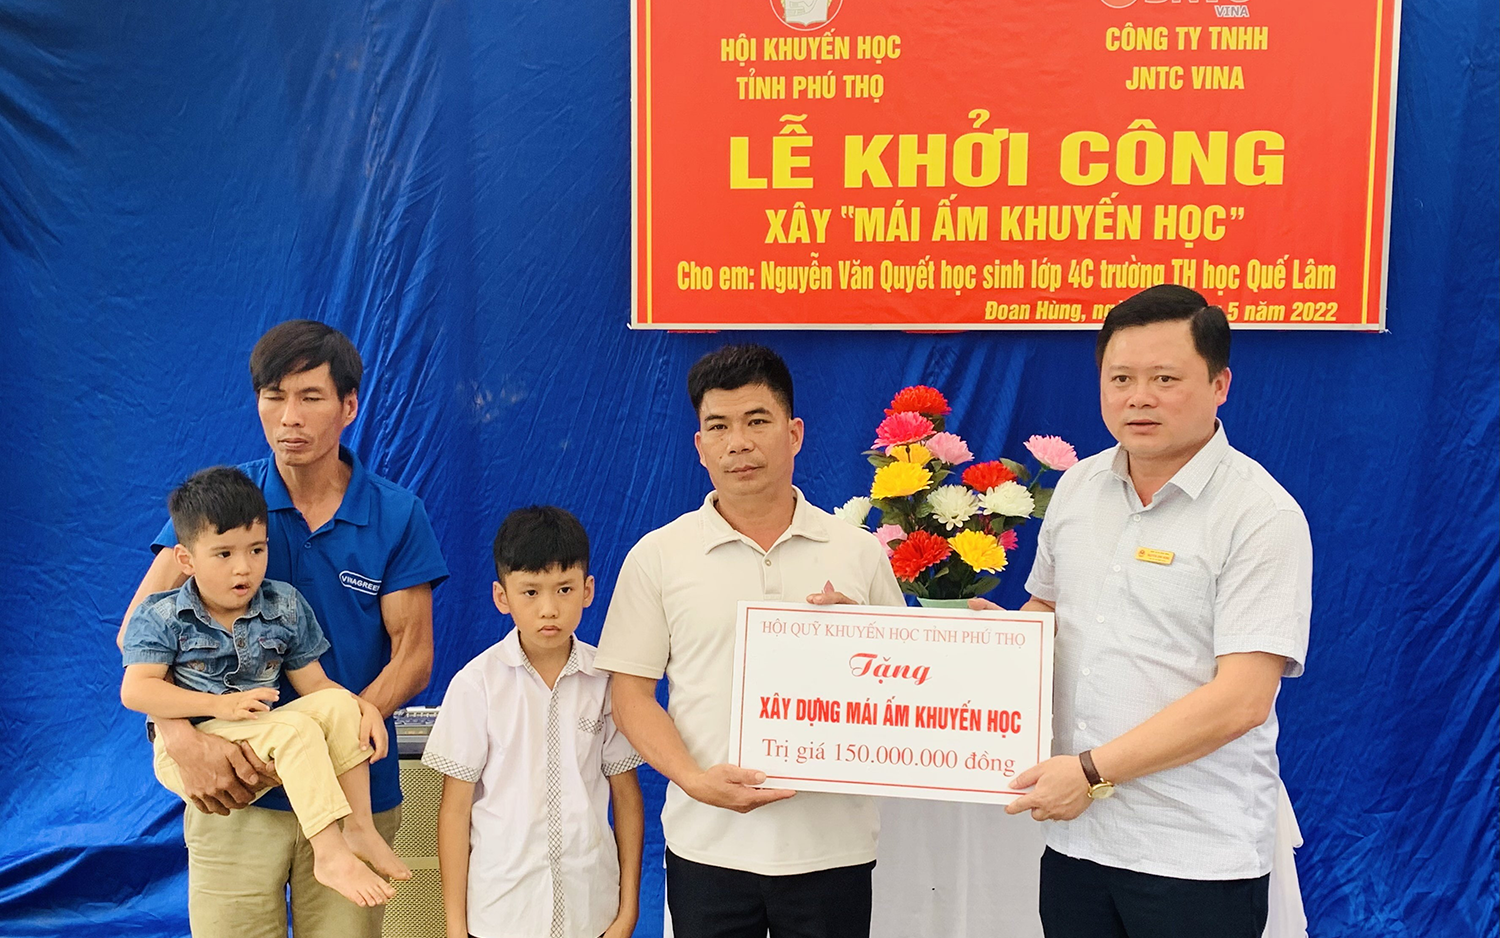 Hội Khuyến học tỉnh Phú Thọ xây “Mái ấm khuyến học” cho học sinh nghèo huyện Đoan Hùng